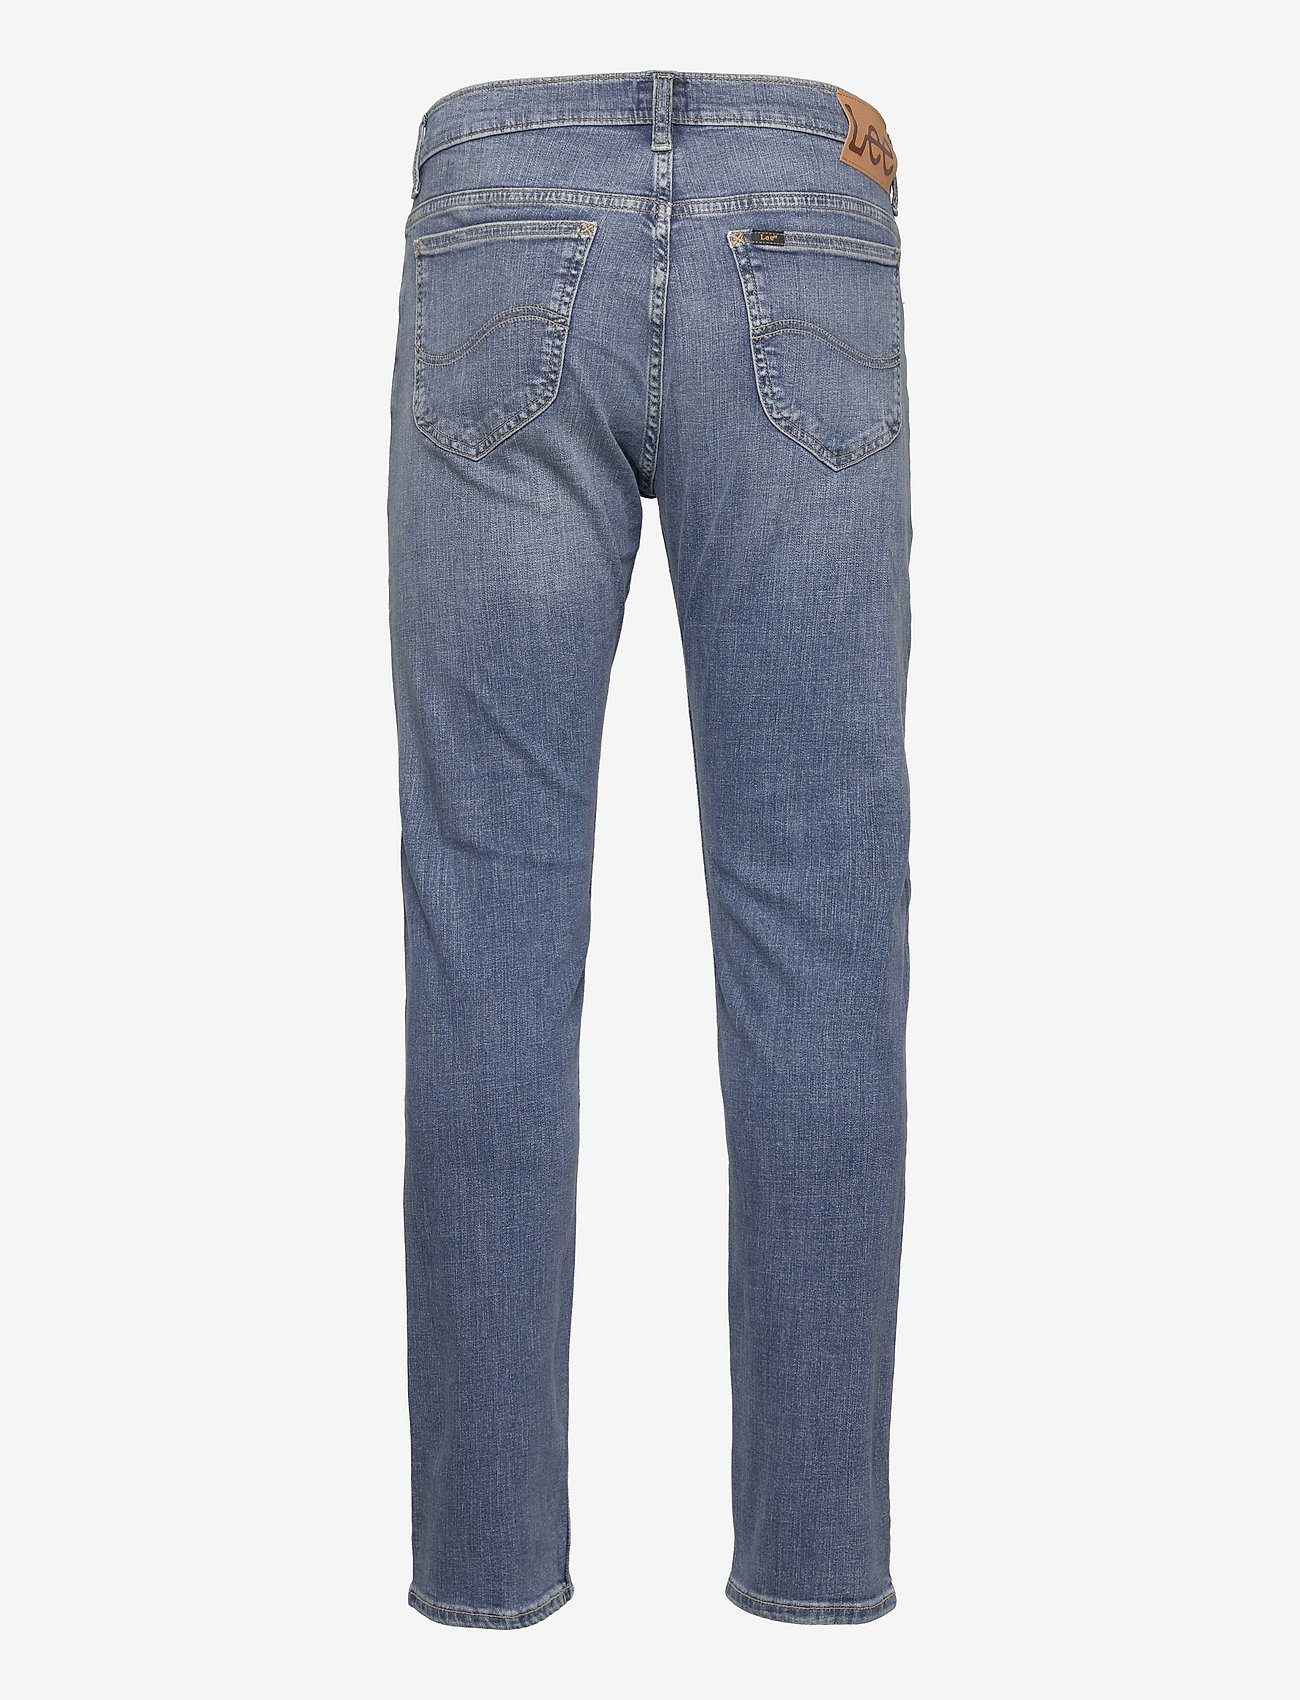 Lee Jeans - RIDER - slim jeans - dk visual cody - 1